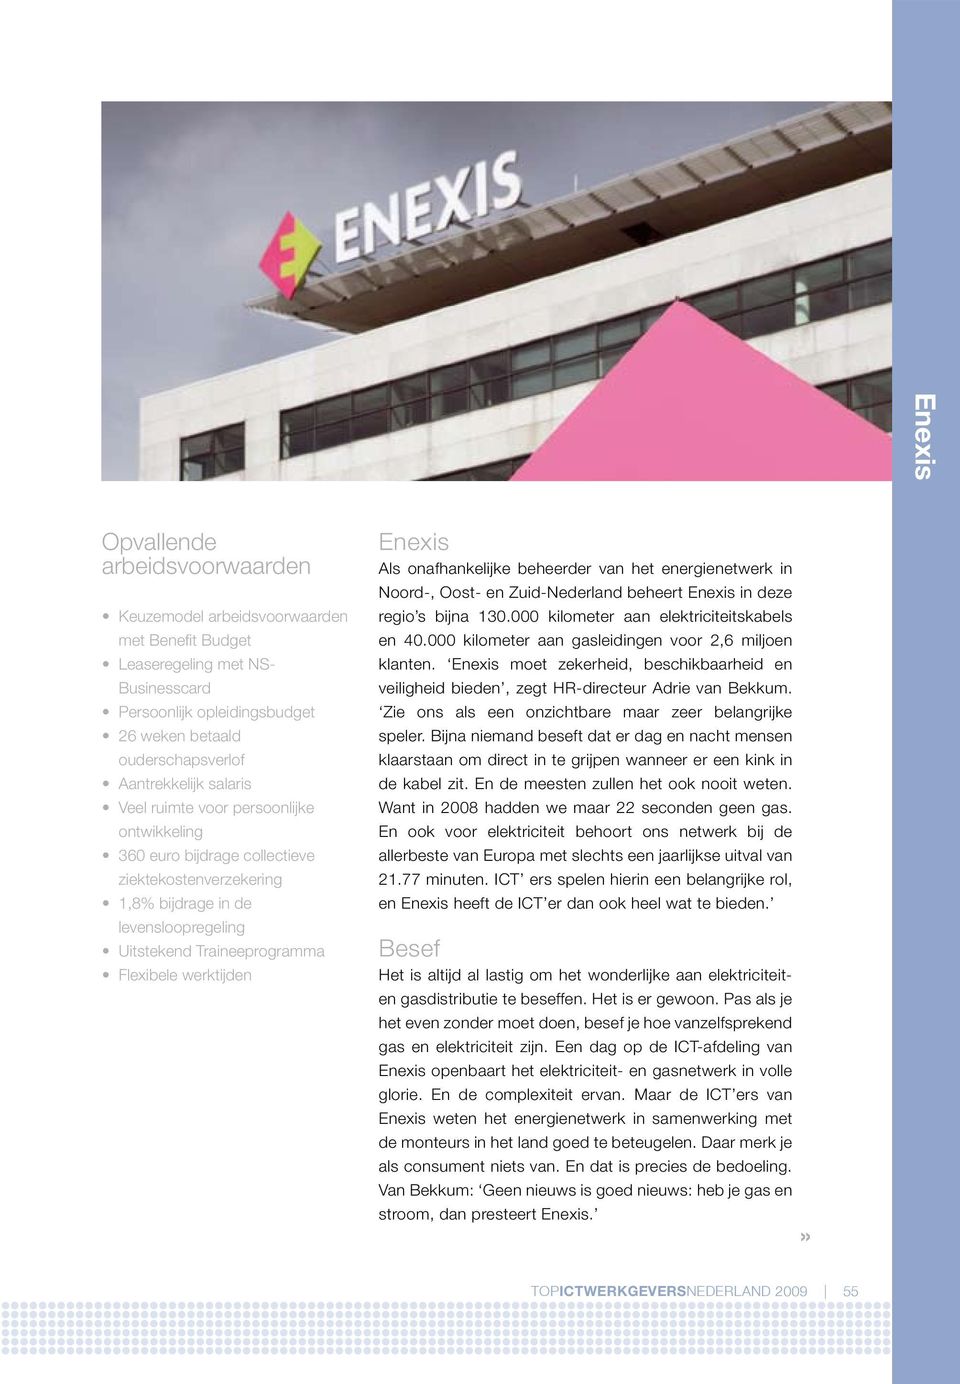 werktijden Enexis Als onafhankelijke beheerder van het energienetwerk in Noord-, Oost- en Zuid-Nederland beheert Enexis in deze regio s bijna 130.000 kilometer aan elektriciteitskabels en 40.